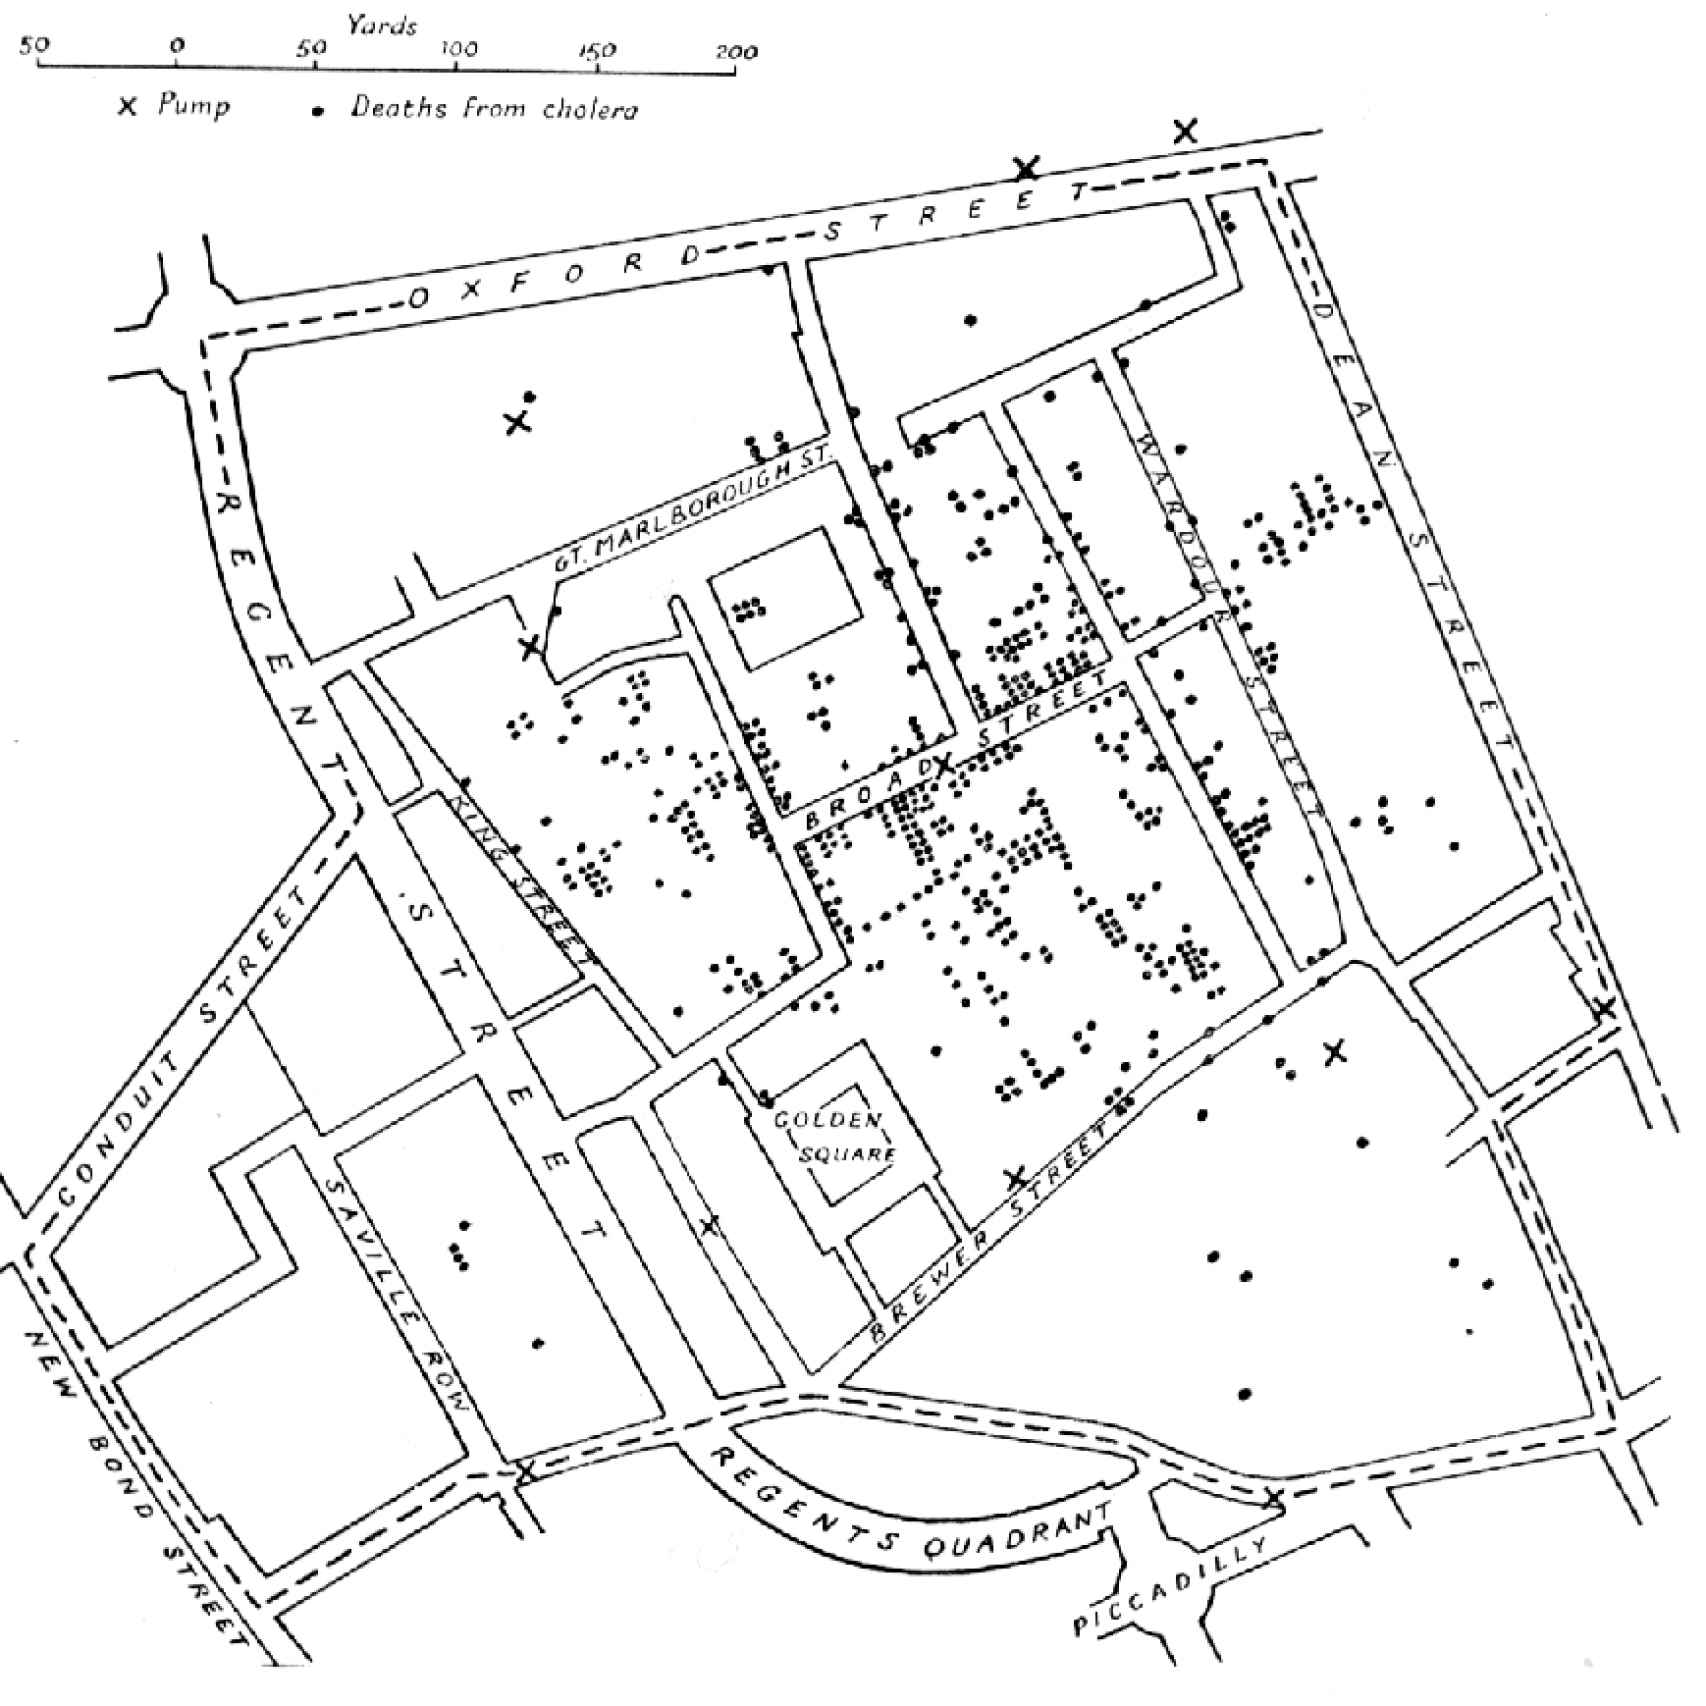 Mapa parcial del cólera en Londres que elaboró Snow.